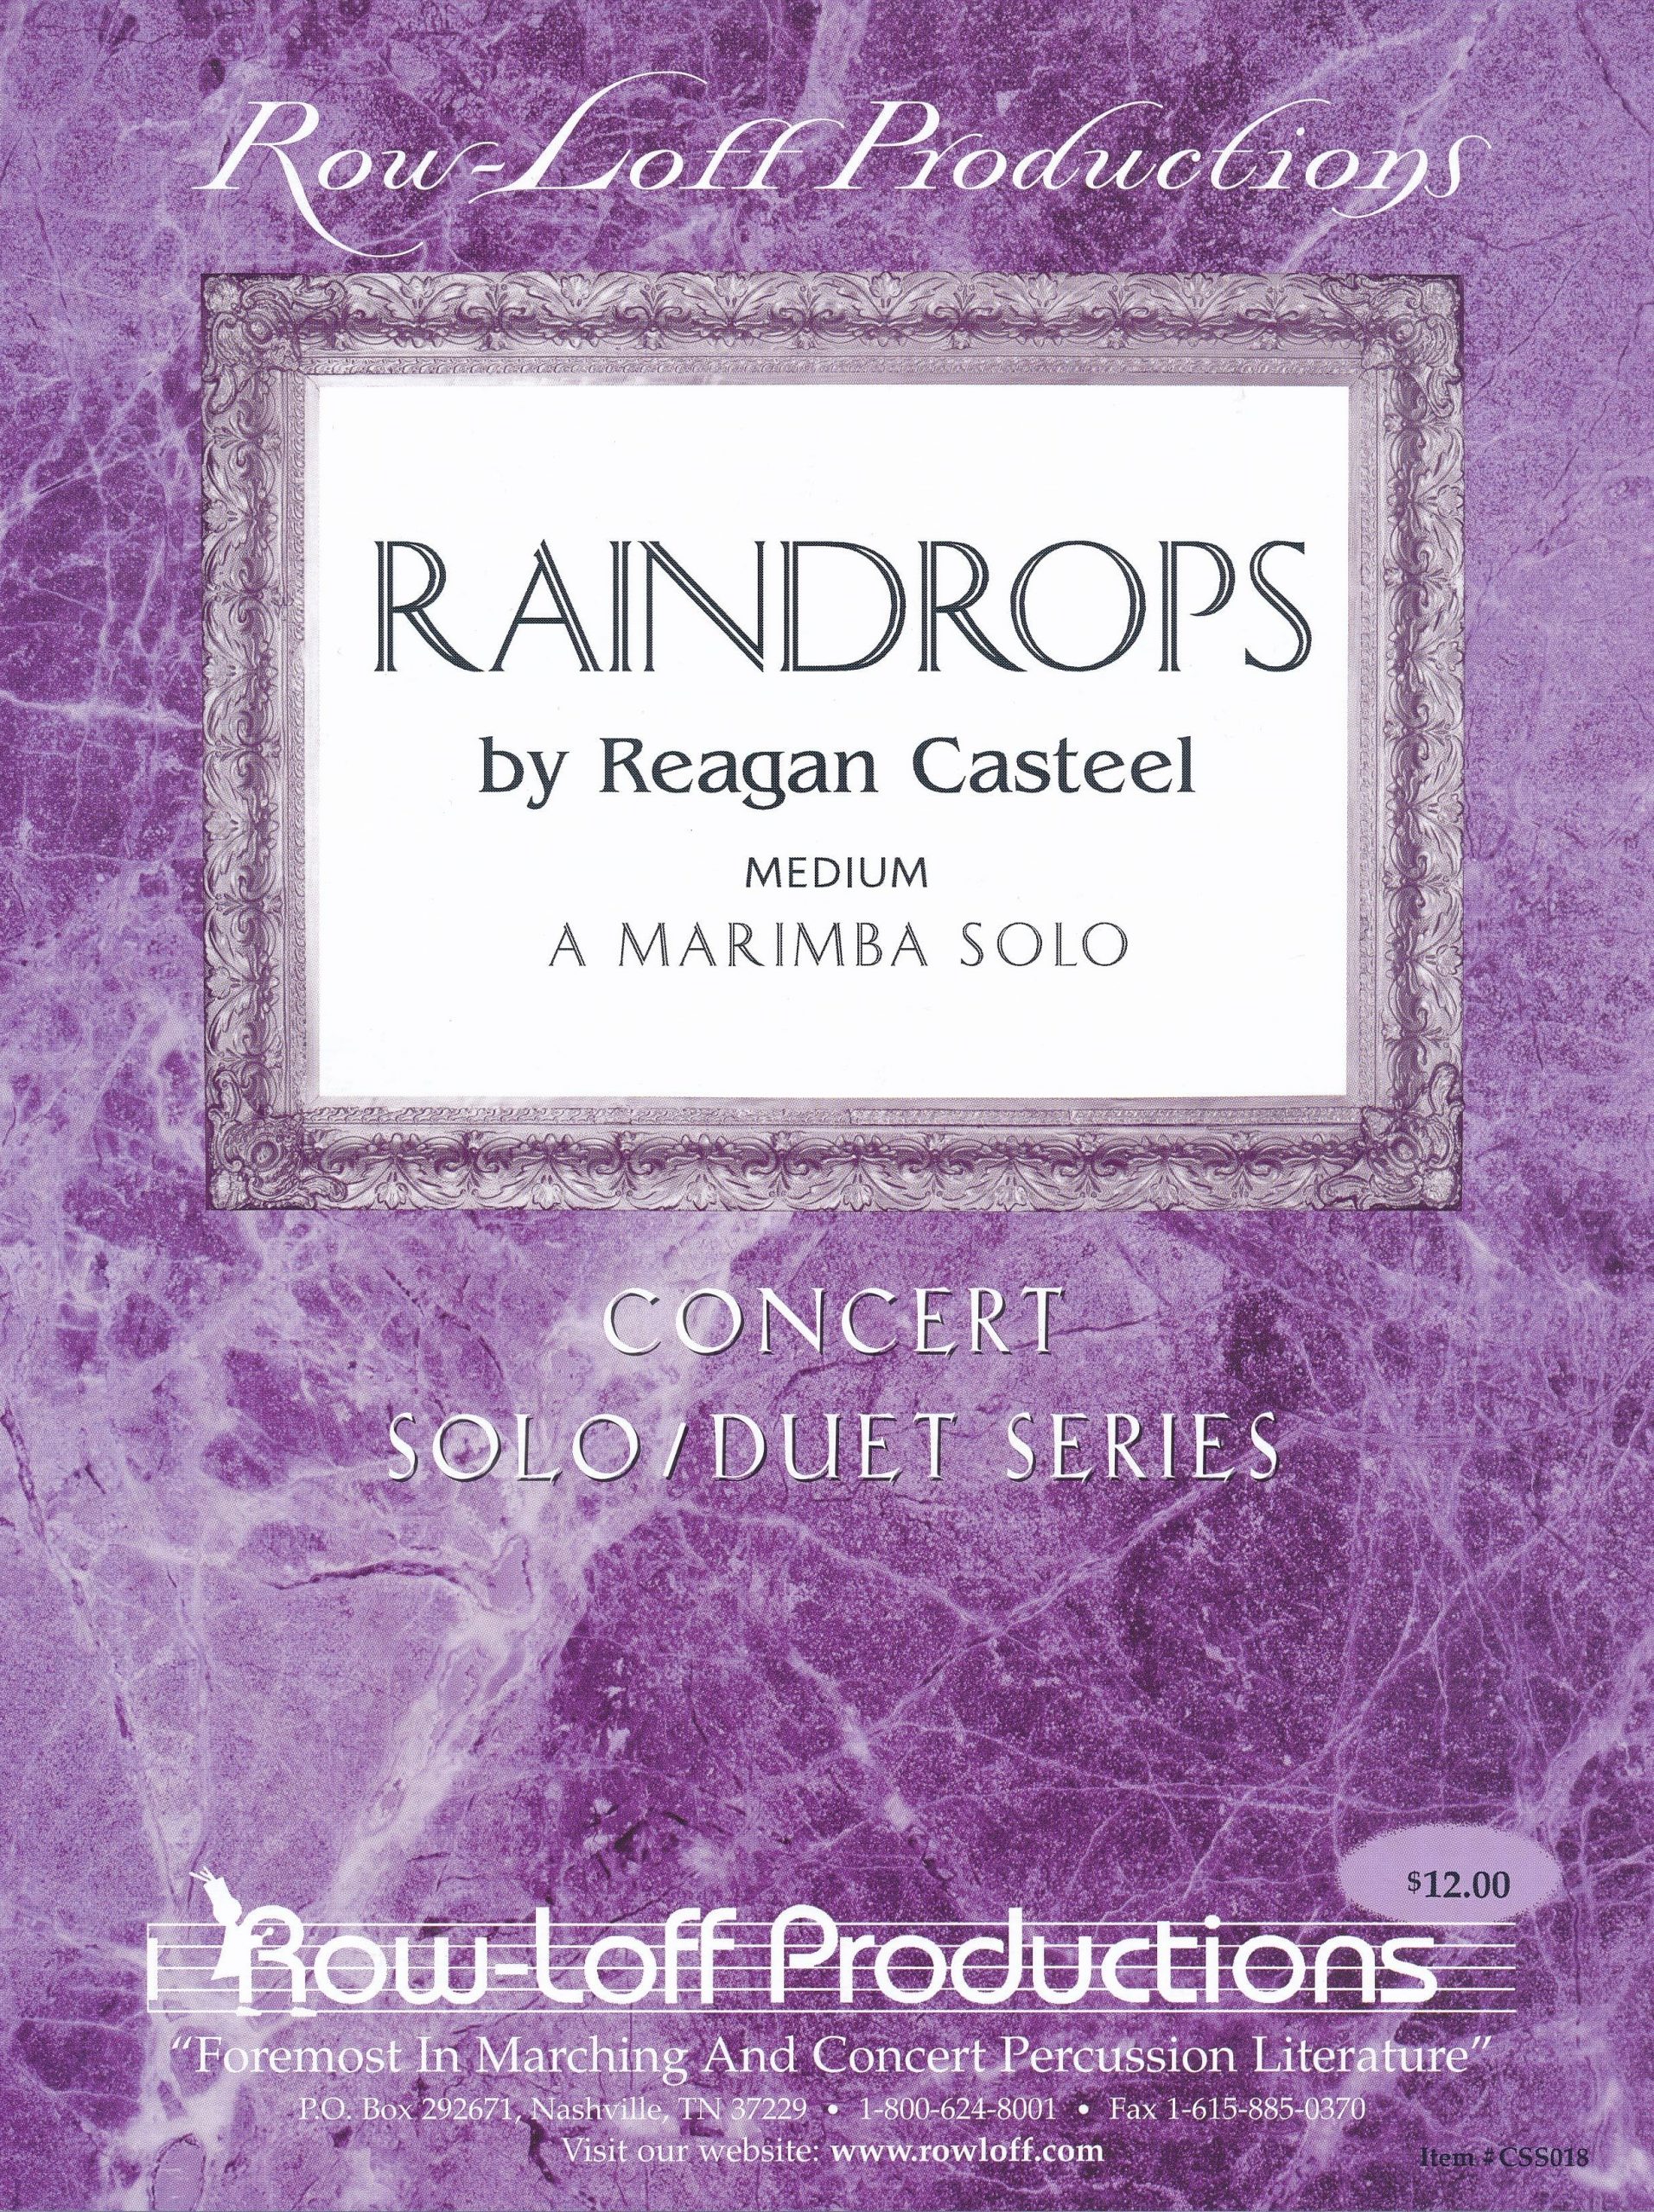 Raindrops by Reagan Casteel